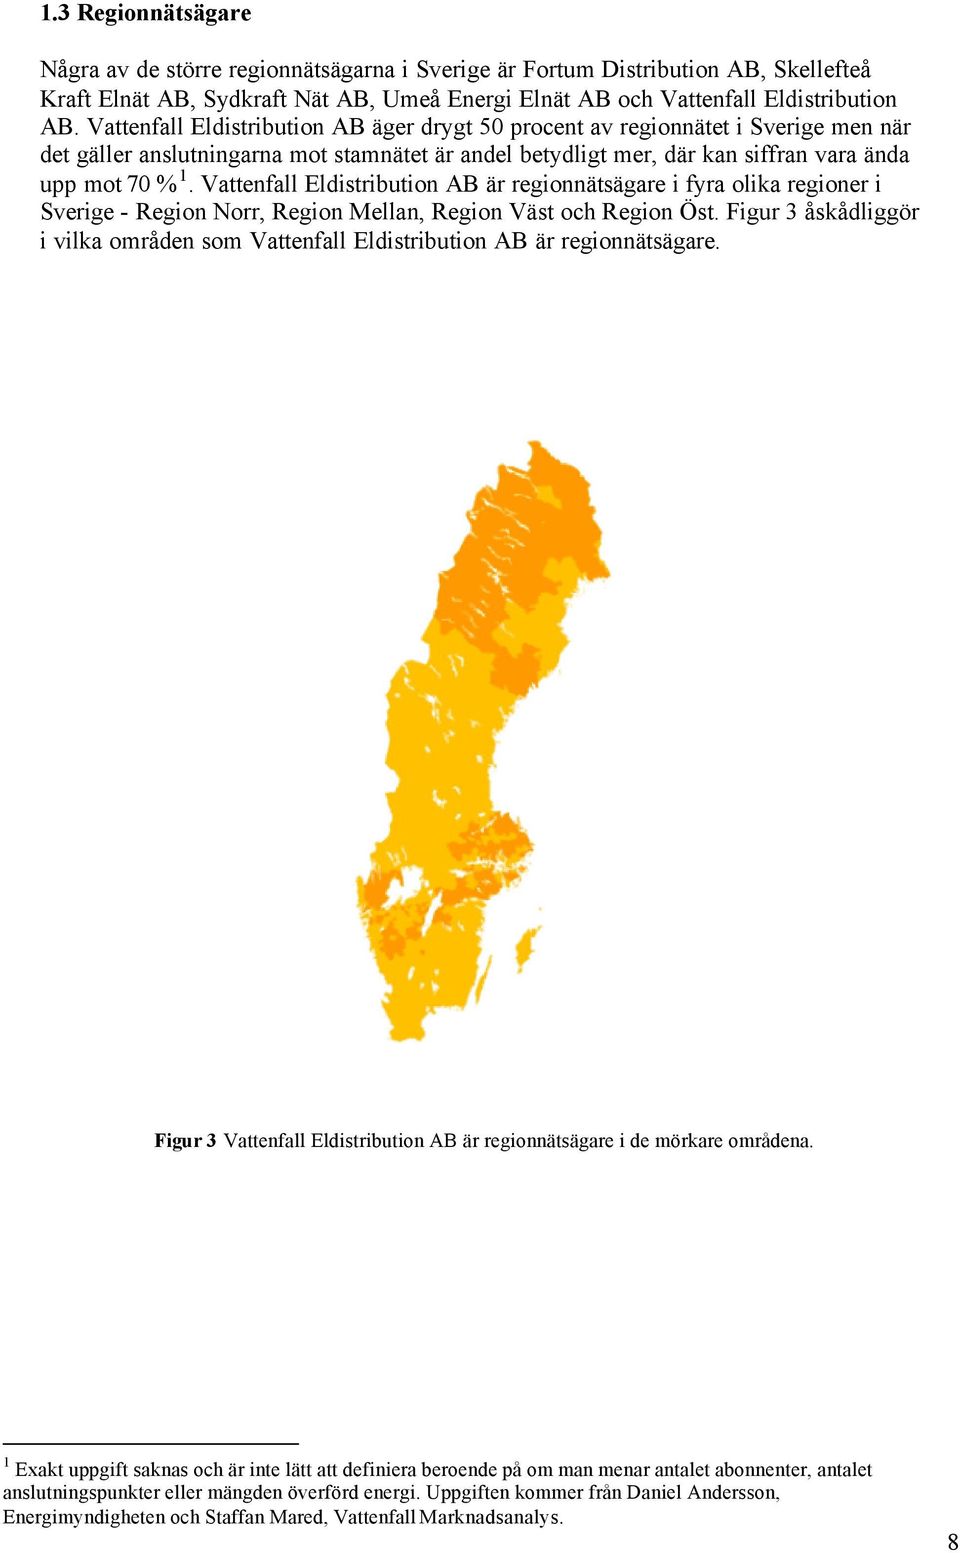 Vattenfall Eldistribution AB är regionnätsägare i fyra olika regioner i Sverige - Region Norr, Region Mellan, Region Väst och Region Öst.